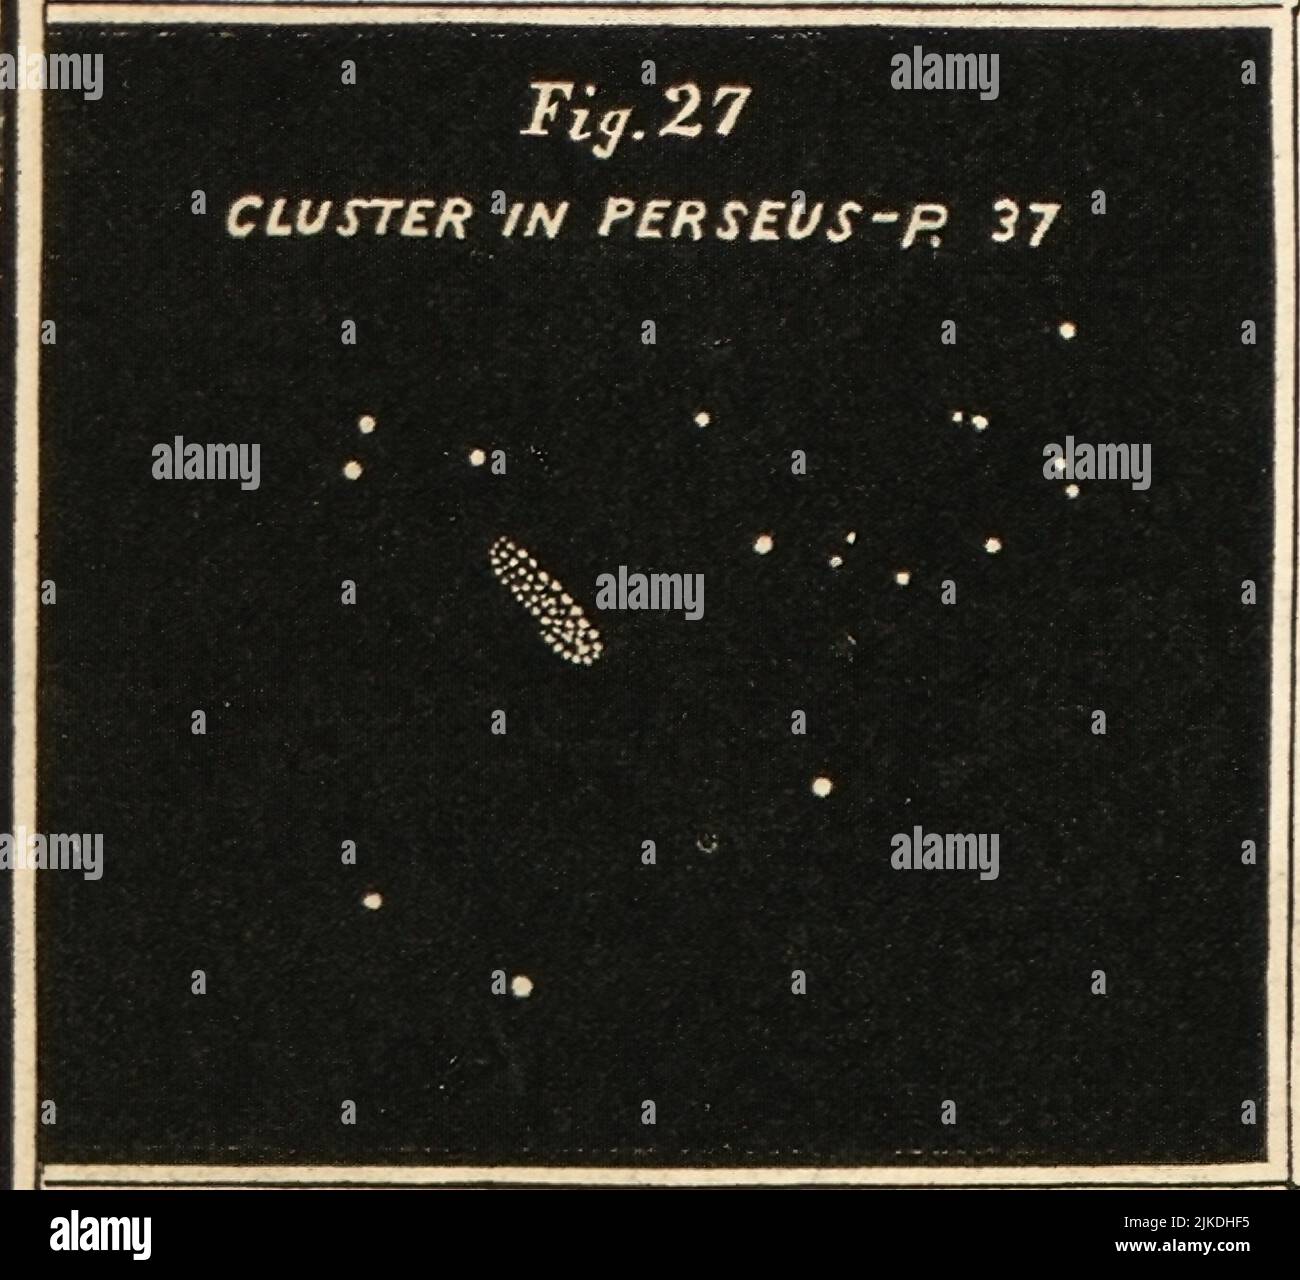 Cluster en Perseo - Atlas diseñado para ilustrar la Geografía de los cielos de Burritt - Burritt, Elijah H. Estrellas dobles y racimos. Clusters, nebulæ Foto de stock